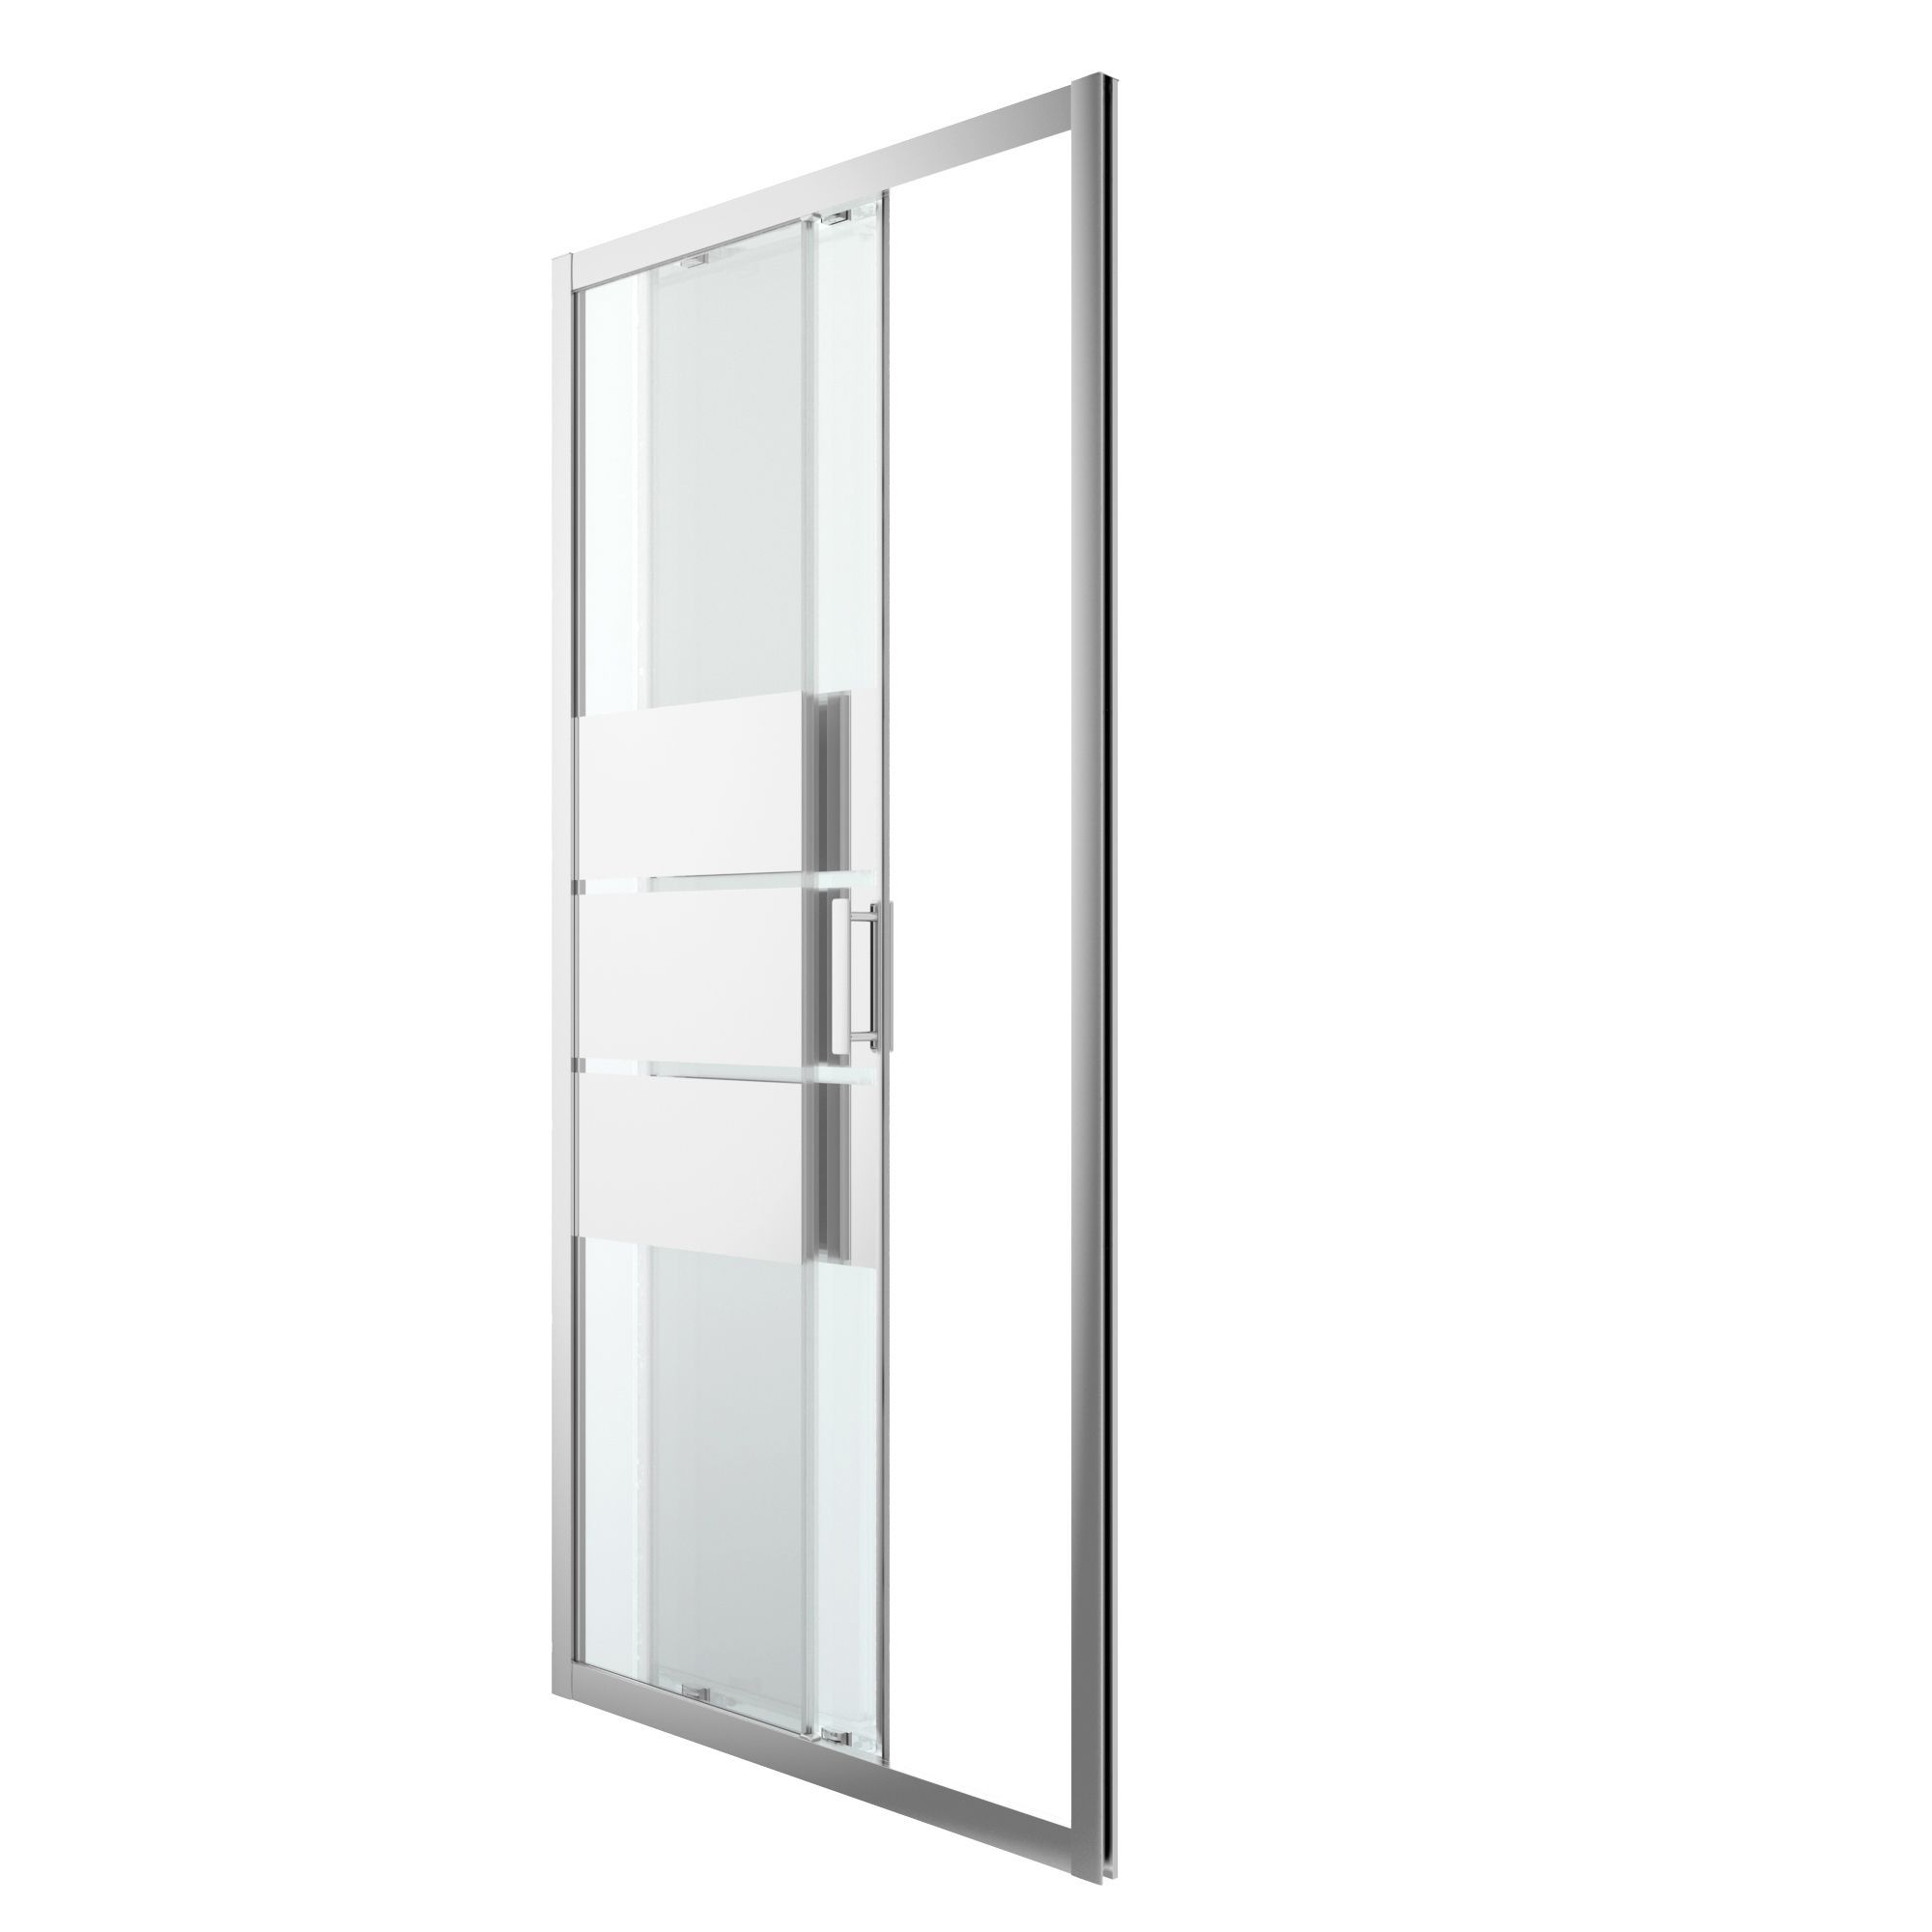 GoodHome Beloya Argenté Silver effect Mirror Strip Sliding Shower Door (H)195cm (W)100cm